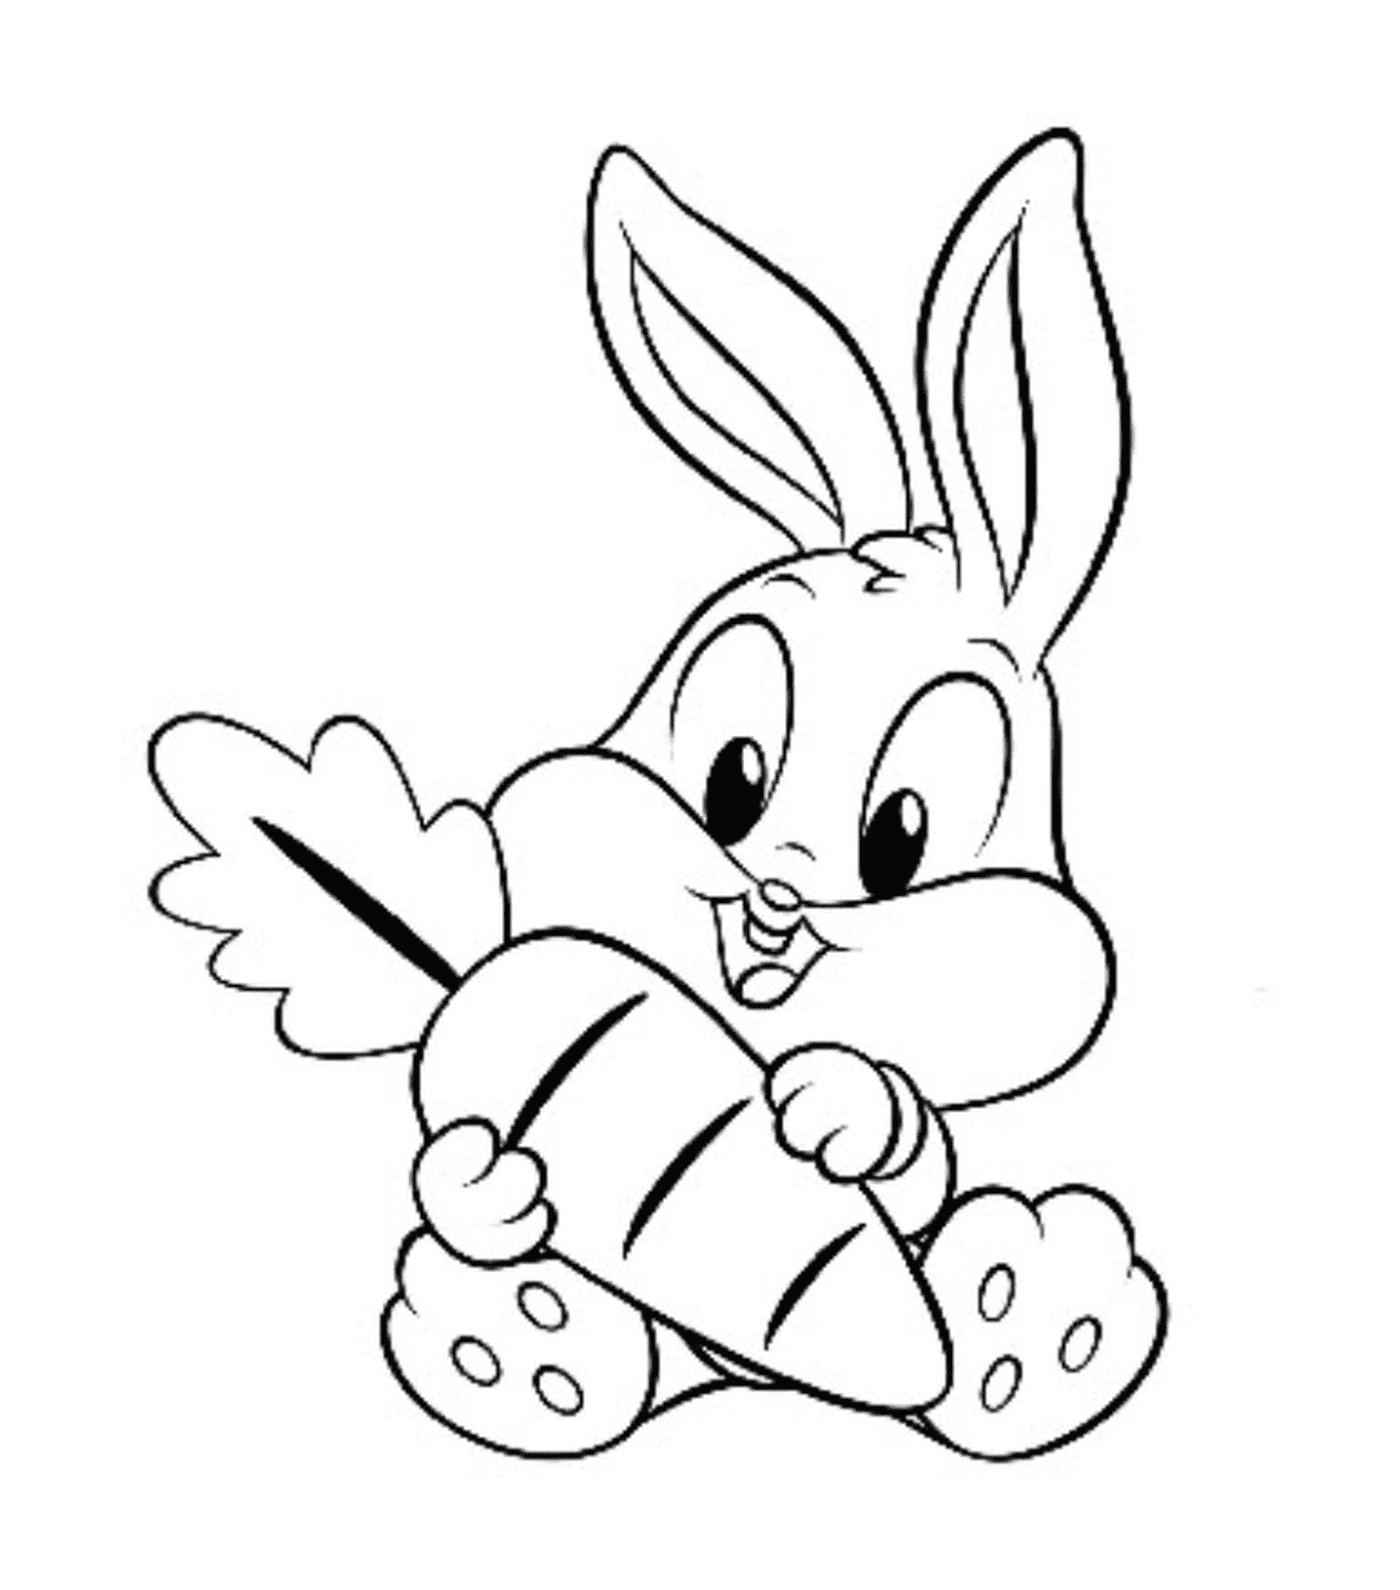  Um coelho segurando uma cenoura grande na boca 